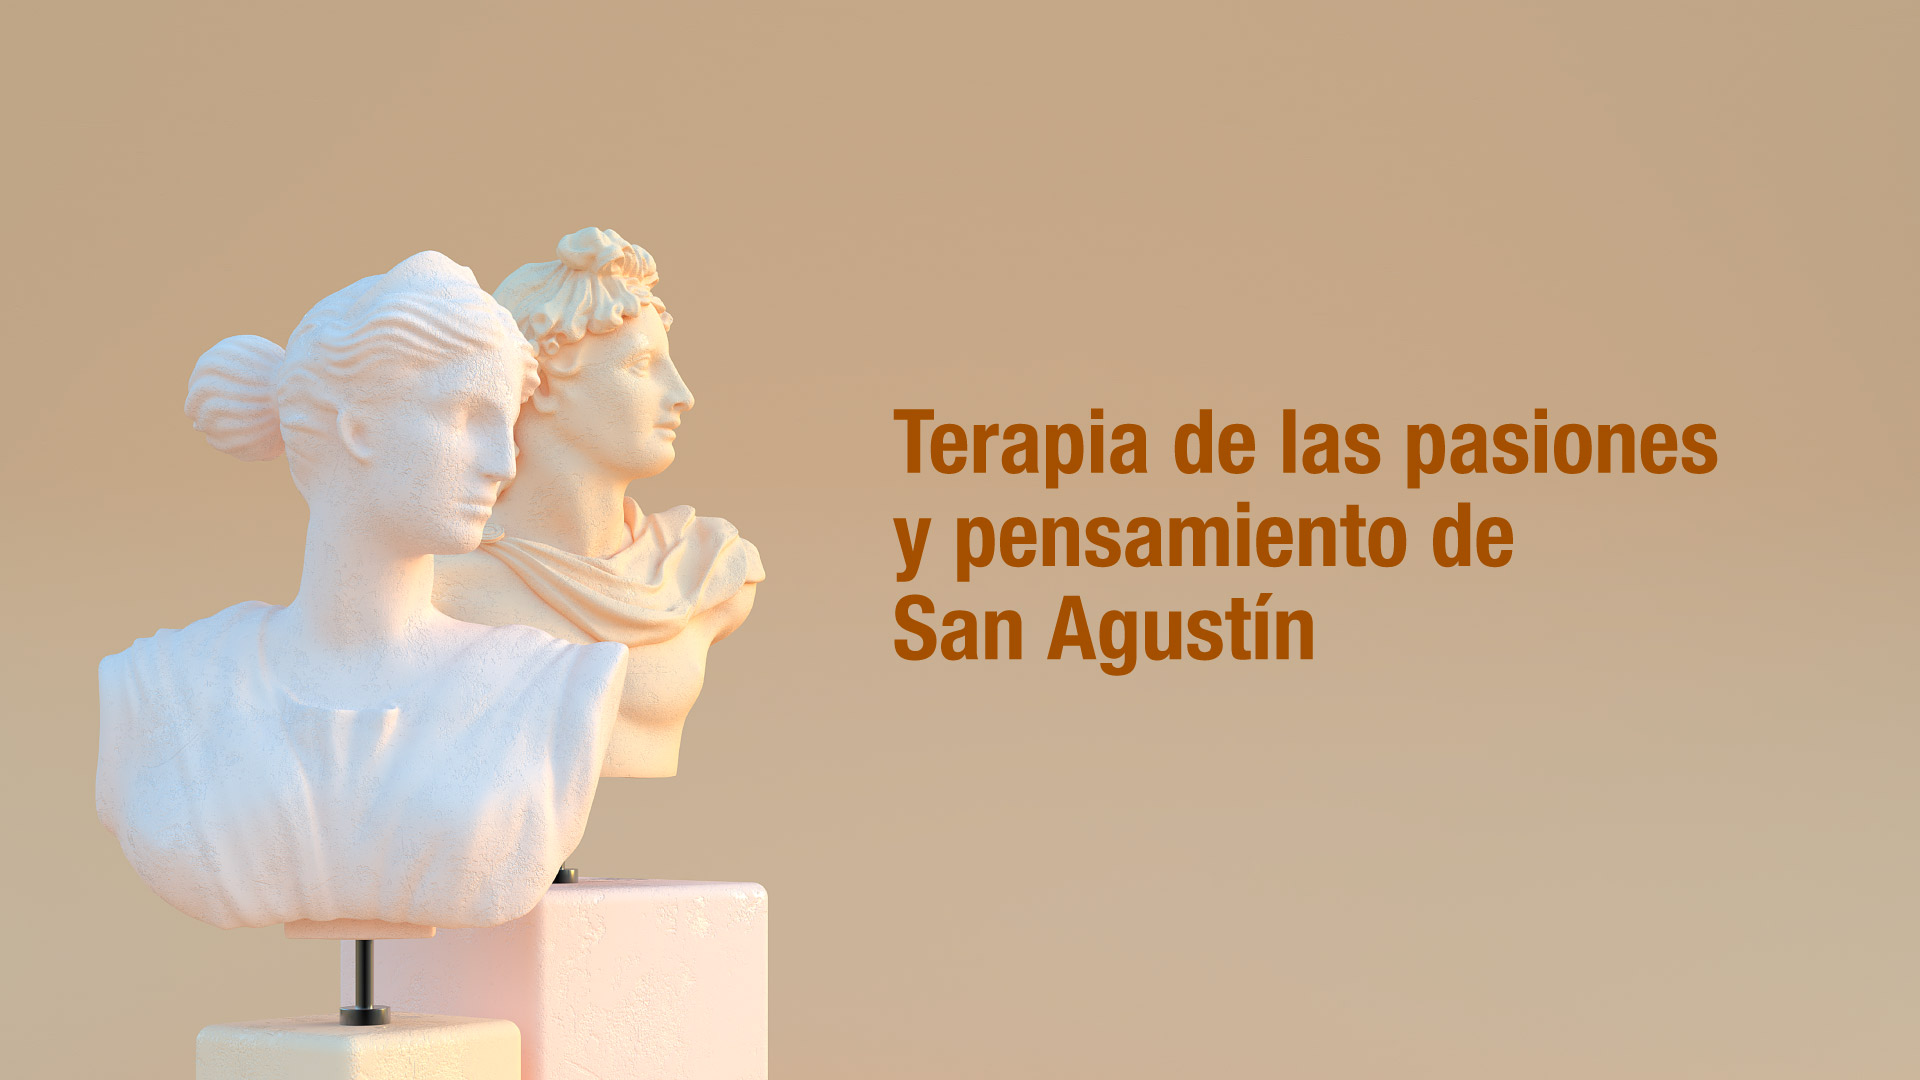 Inscripciones abiertas para el curso gratuito en Terapia de las pasiones y pensamiento de San Agustín